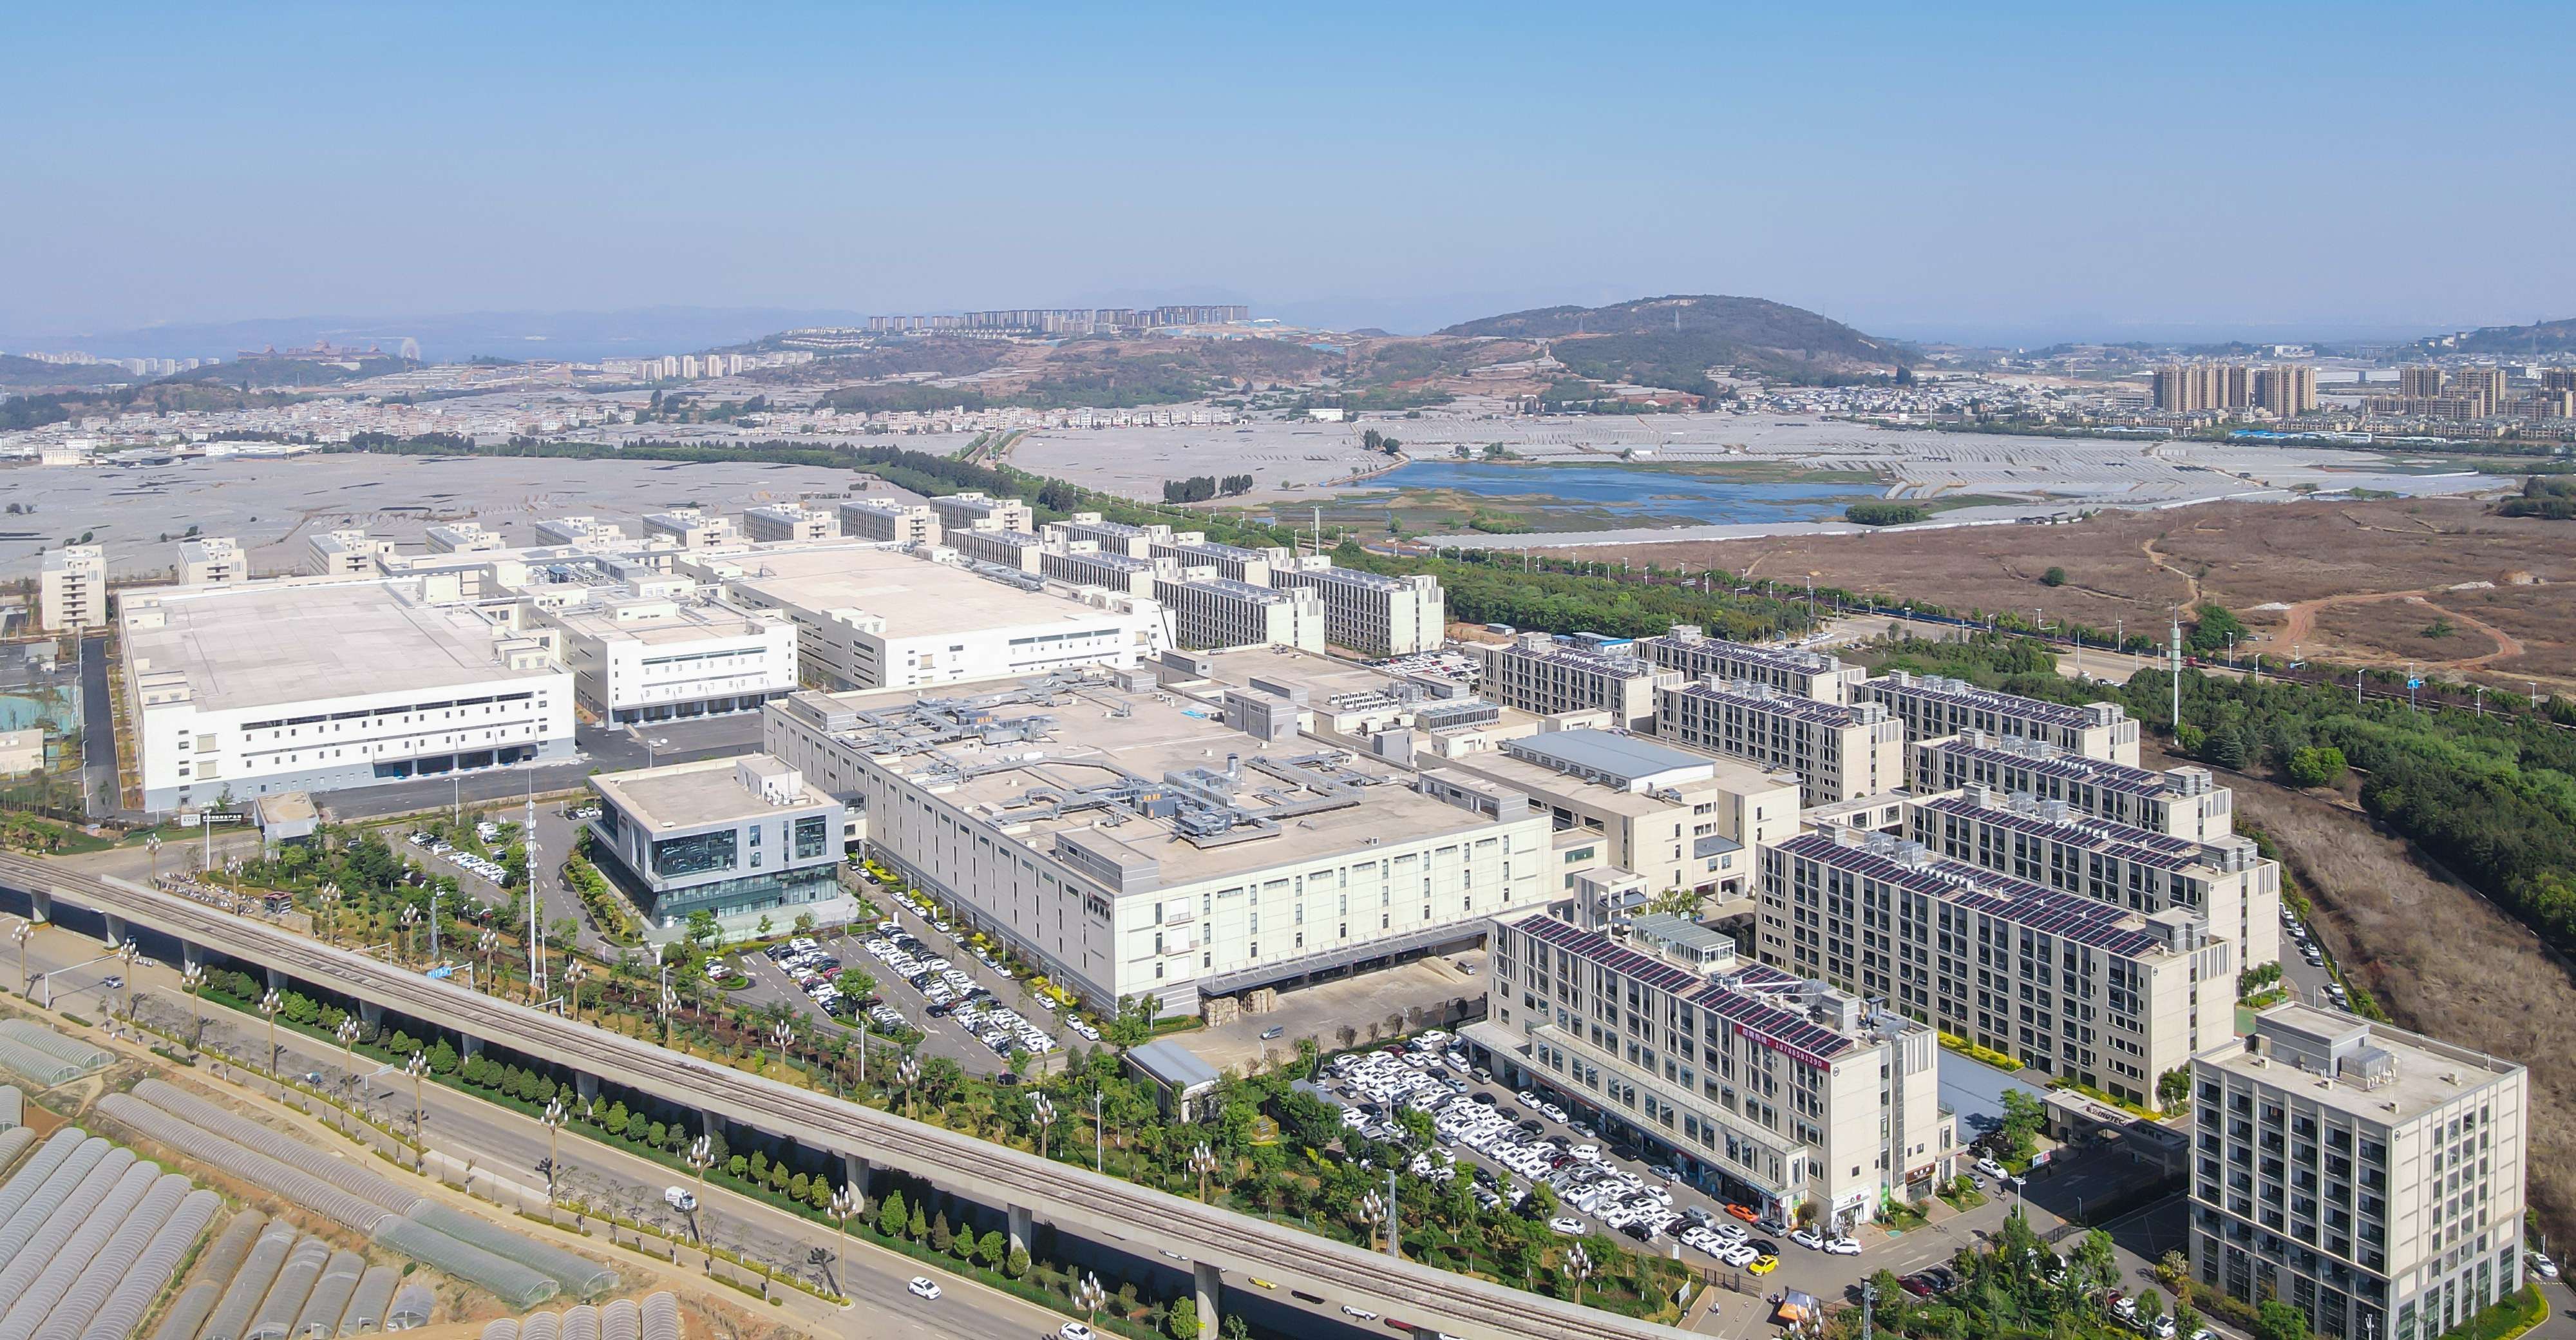 闻泰昆明智能制造产业园,致力打造中国西部最大的智能制造产业中心